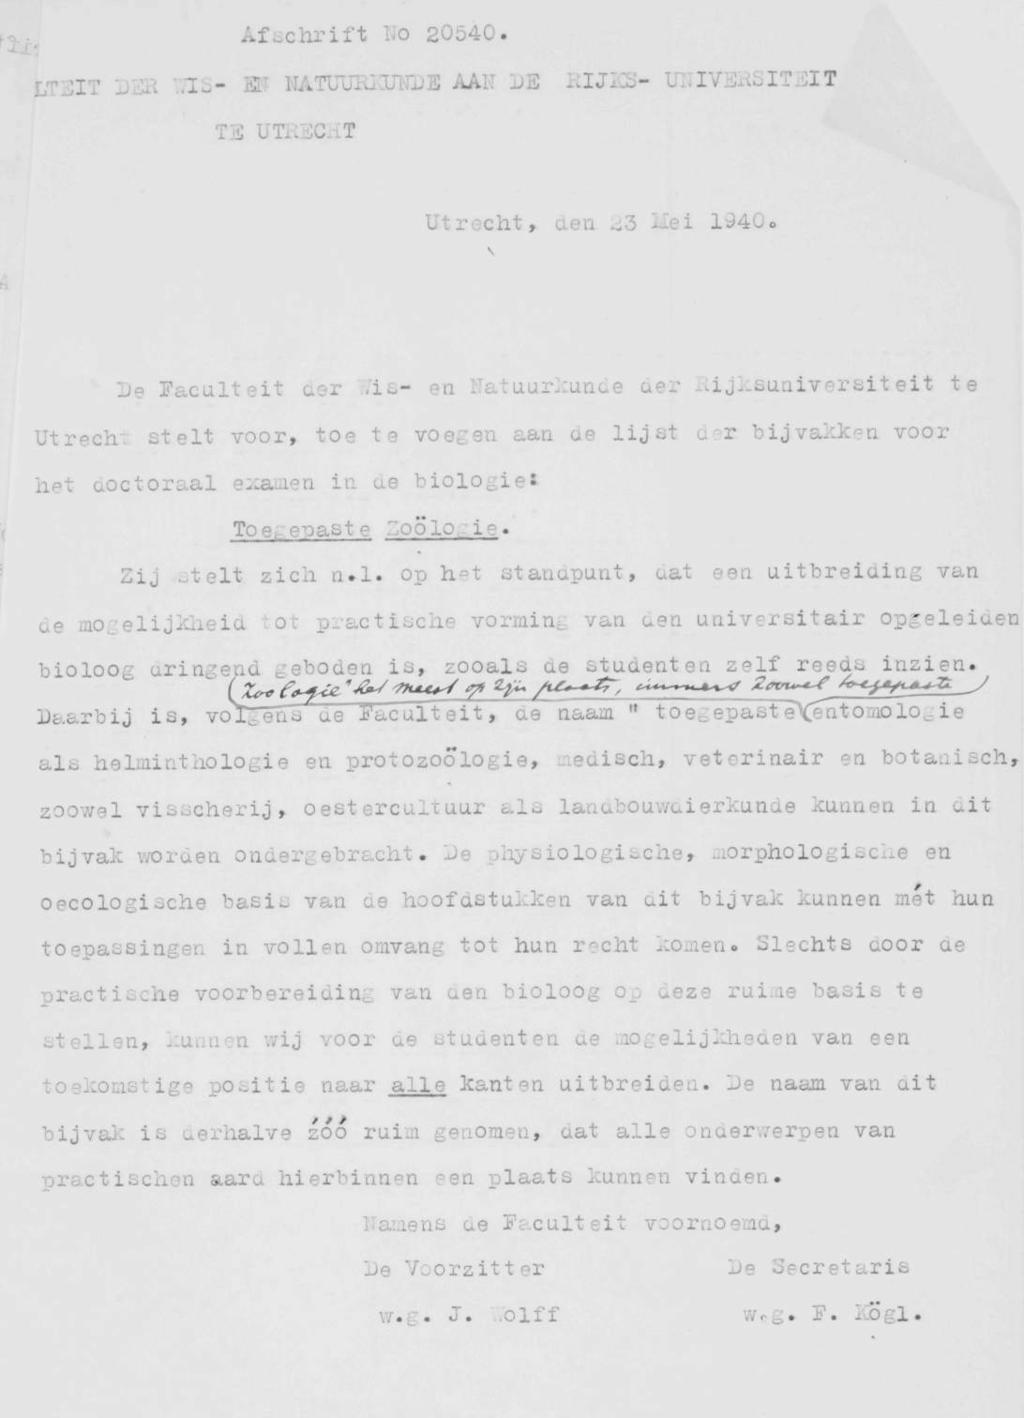 Afschrift No 20540. LT3IT DER WIS- ELT MTUURKUNDE AAN DE RIJKS- UNIVERSITEIT TE UTRECHT Utrecht, den 23 Mei 1940. De Faculteit der.